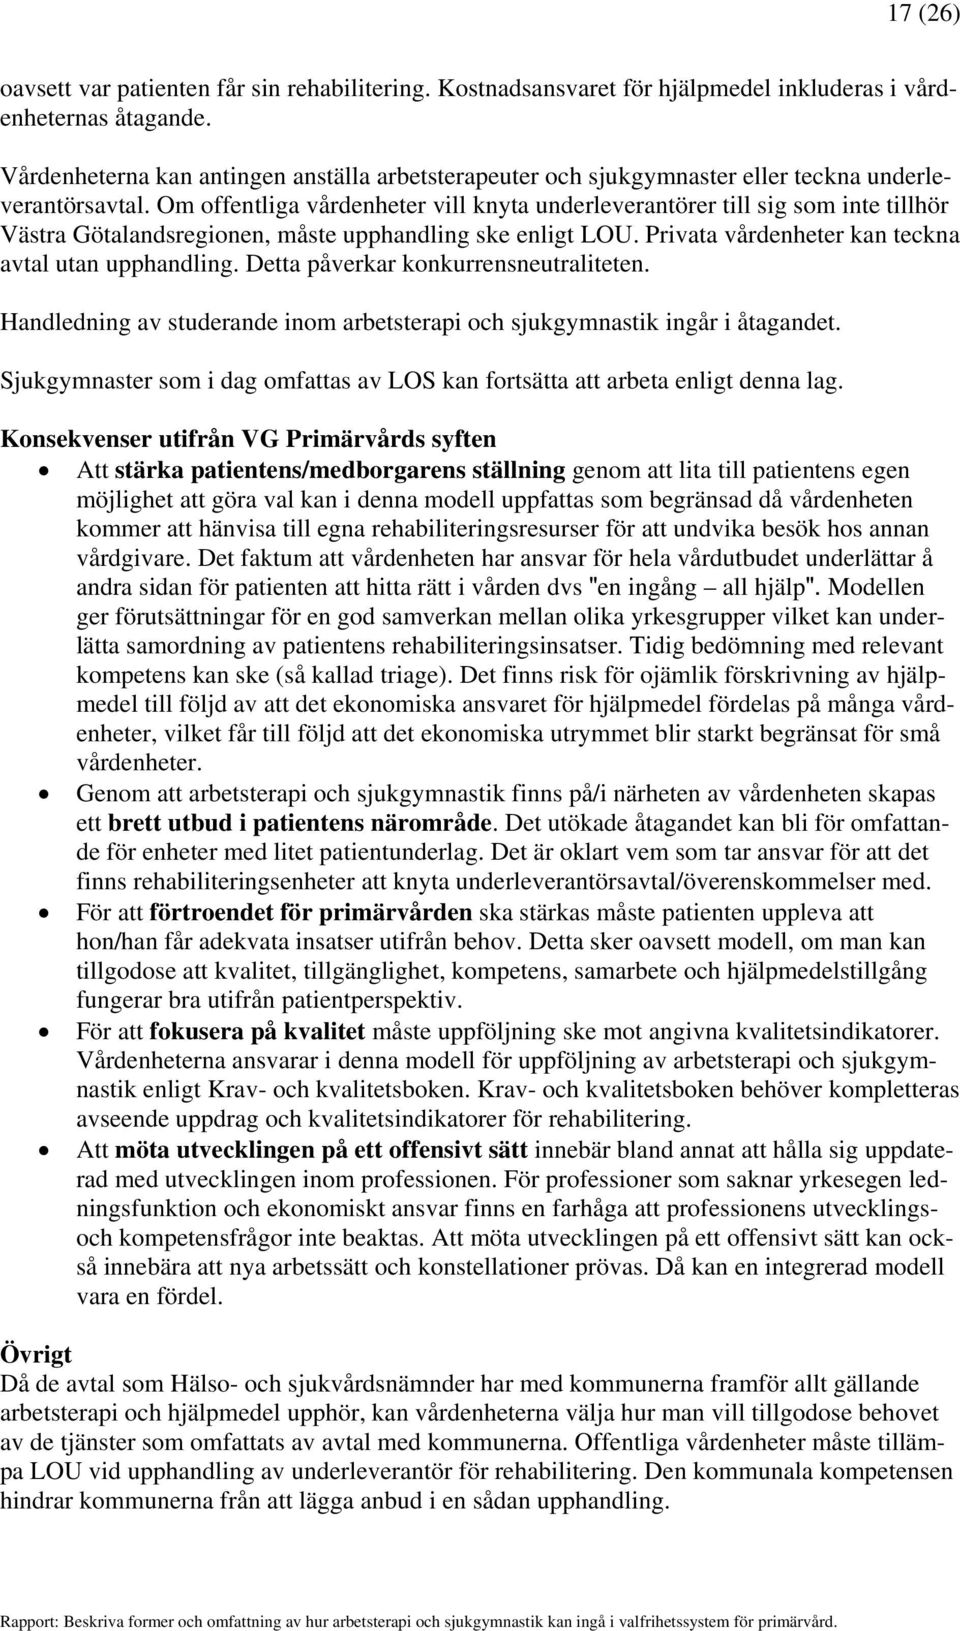 Om offentliga vårdenheter vill knyta underleverantörer till sig som inte tillhör Västra Götalandsregionen, måste upphandling ske enligt LOU. Privata vårdenheter kan teckna avtal utan upphandling.